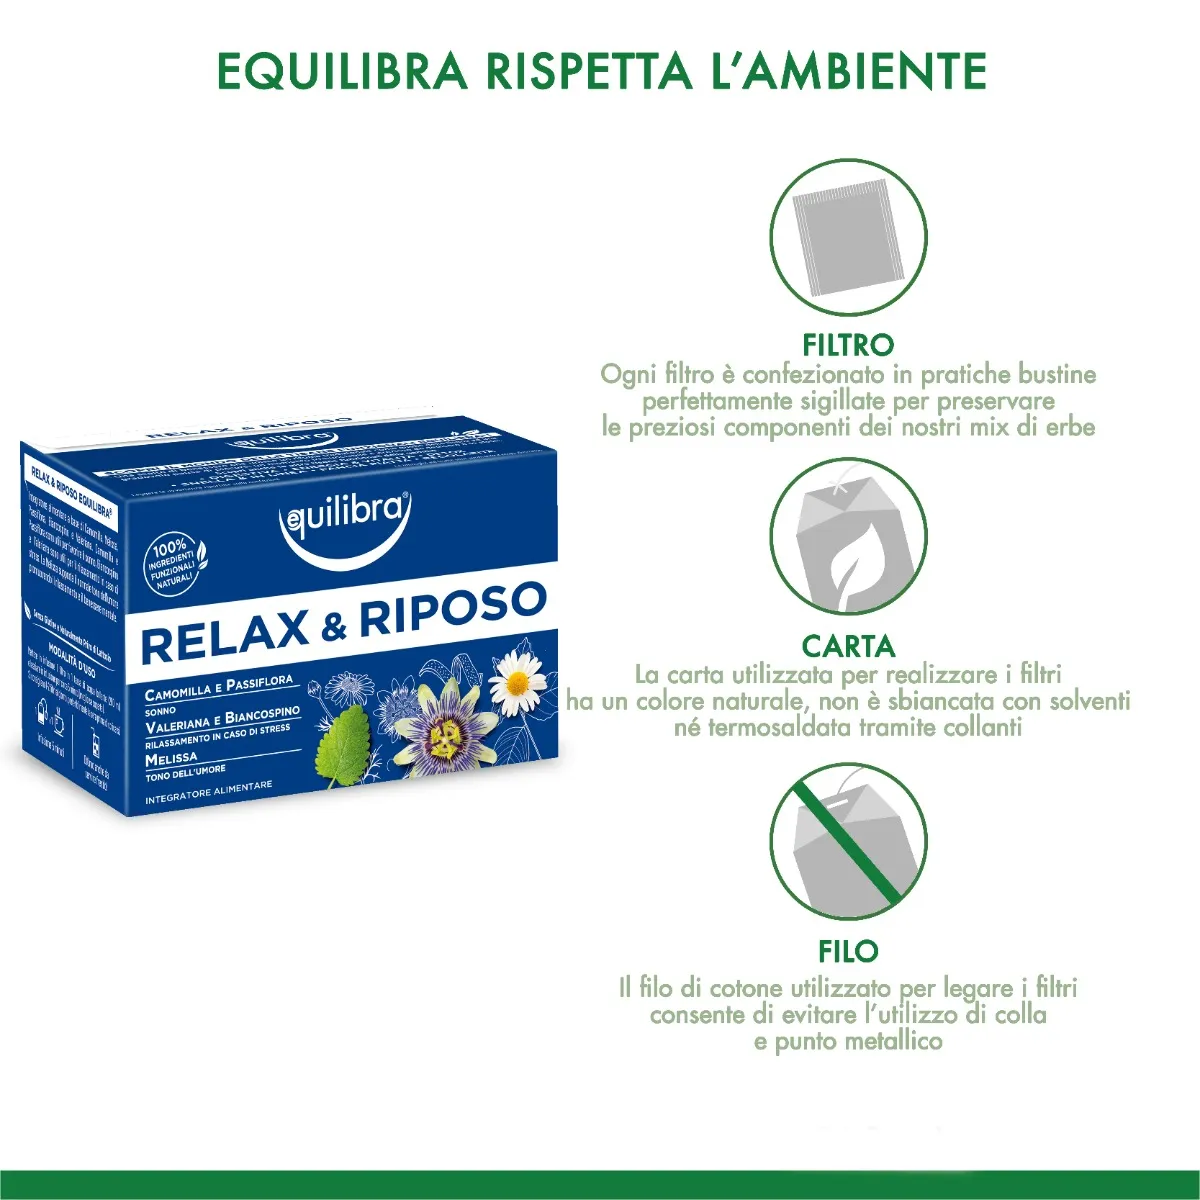 Equilibra Tisana Relax e Riposo 15 Filtri Con Camomilla, Melissa, Passiflora, Biancospino e Valeriana.